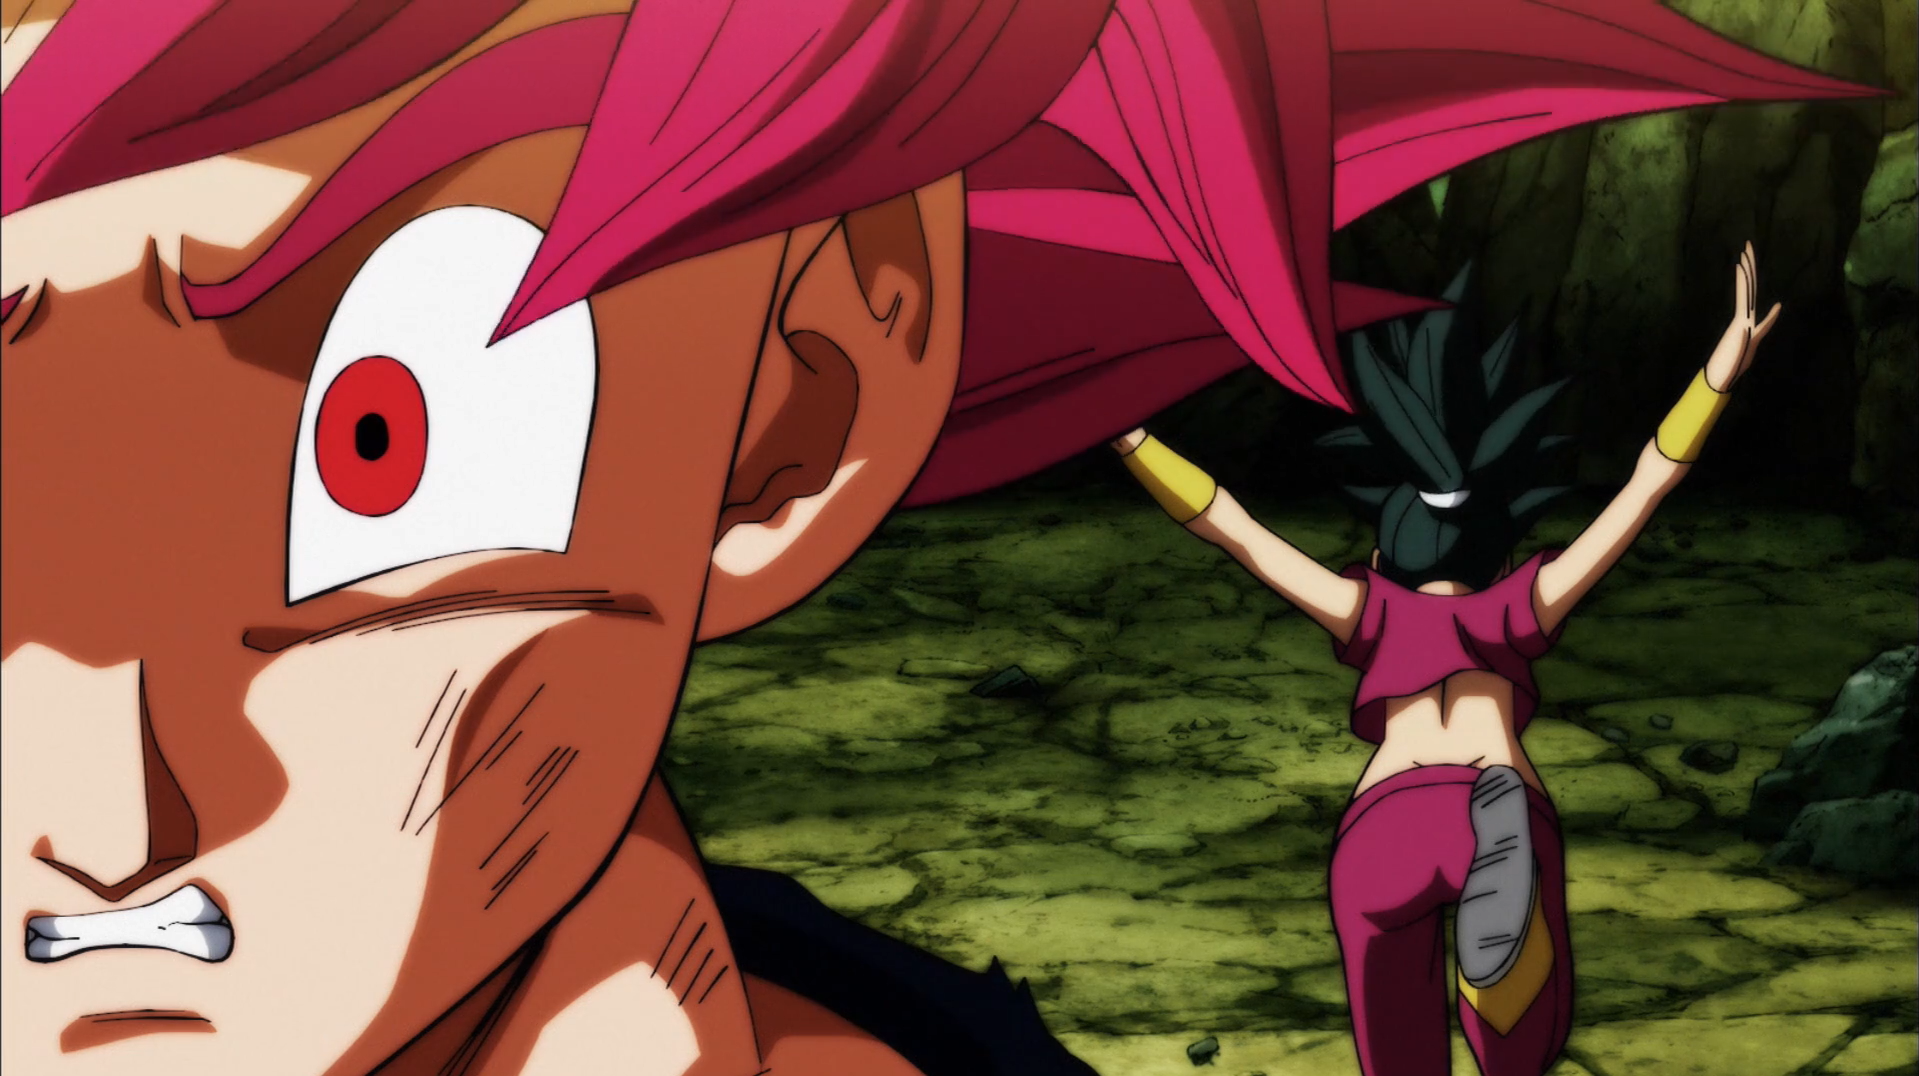 Imagens vazadas do Episódio 129 de Dragon Ball Super confirmam uma previsão  sobre Goku no Torneio do Poder